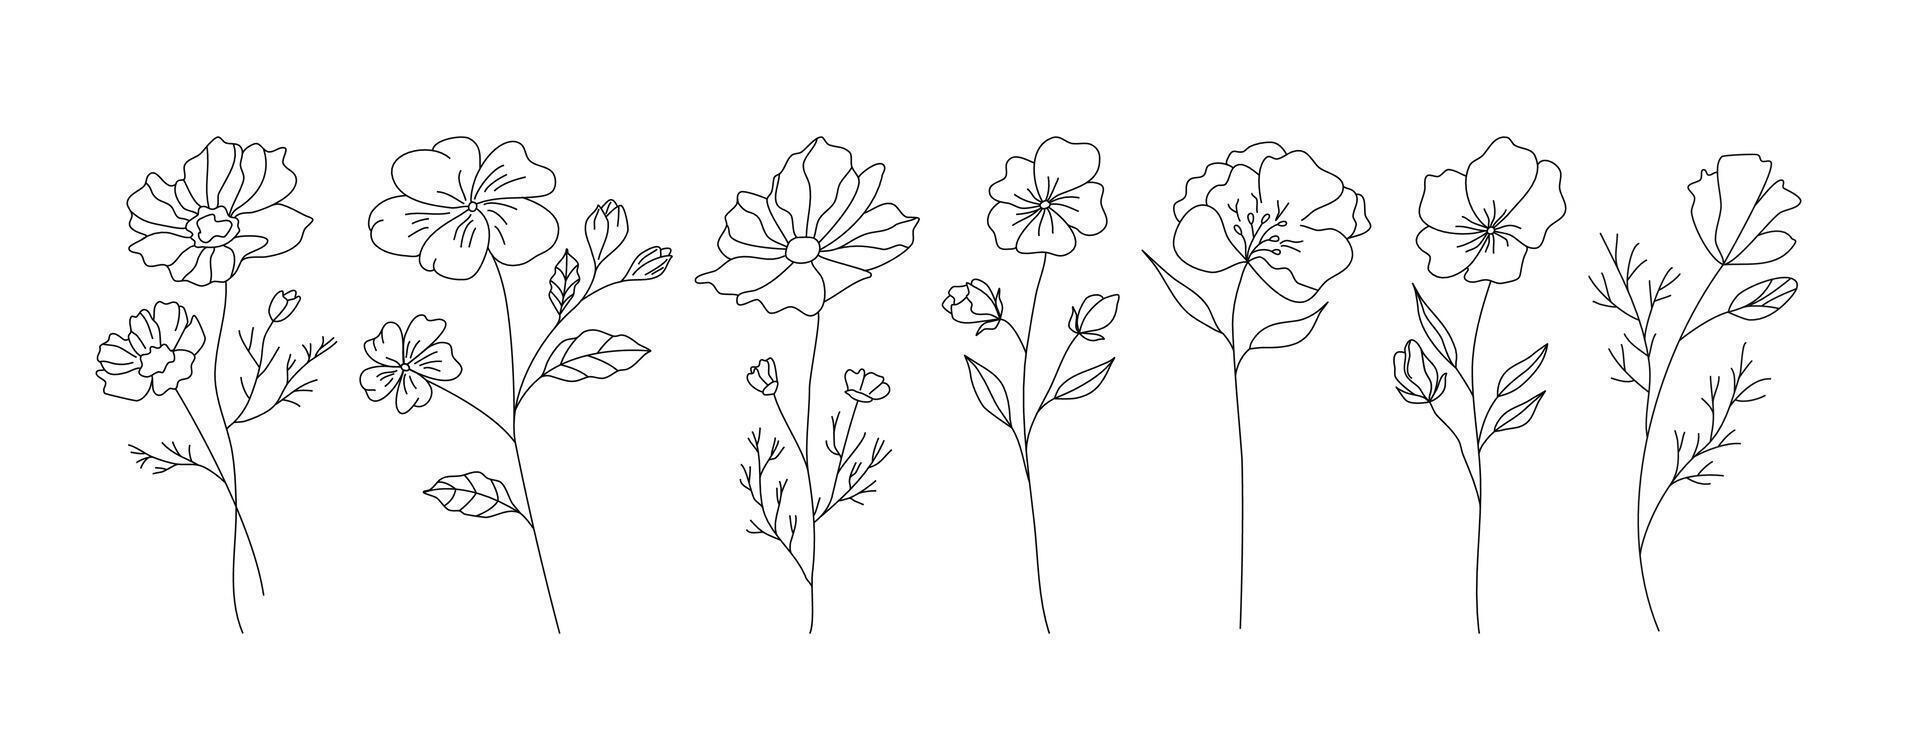 Hand gezeichnet wild Feld Flora, Blumen, Blätter, Kräuter, Pflanzen, Geäst. minimal Blumen- botanisch Linie Kunst. Illustration zum Logo oder Tätowierung, Einladungen, speichern das Datum Karte vektor